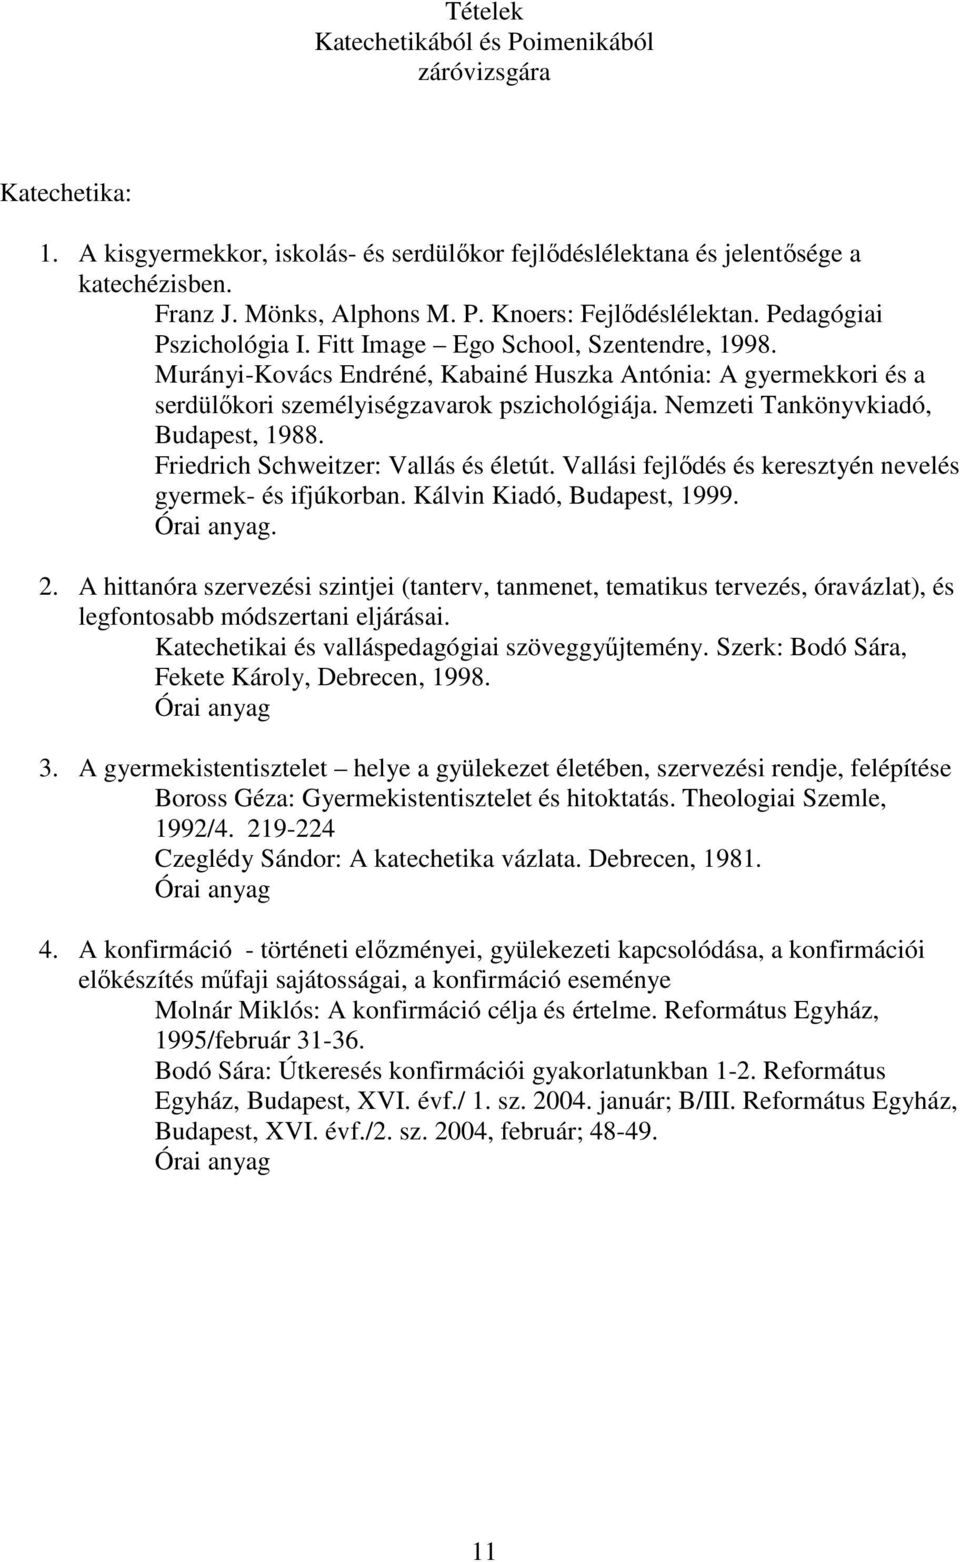 Nemzeti Tankönyvkiadó, Budapest, 1988. Friedrich Schweitzer: Vallás és életút. Vallási fejlıdés és keresztyén nevelés gyermek- és ifjúkorban. Kálvin Kiadó, Budapest, 1999. Órai anyag. 2.